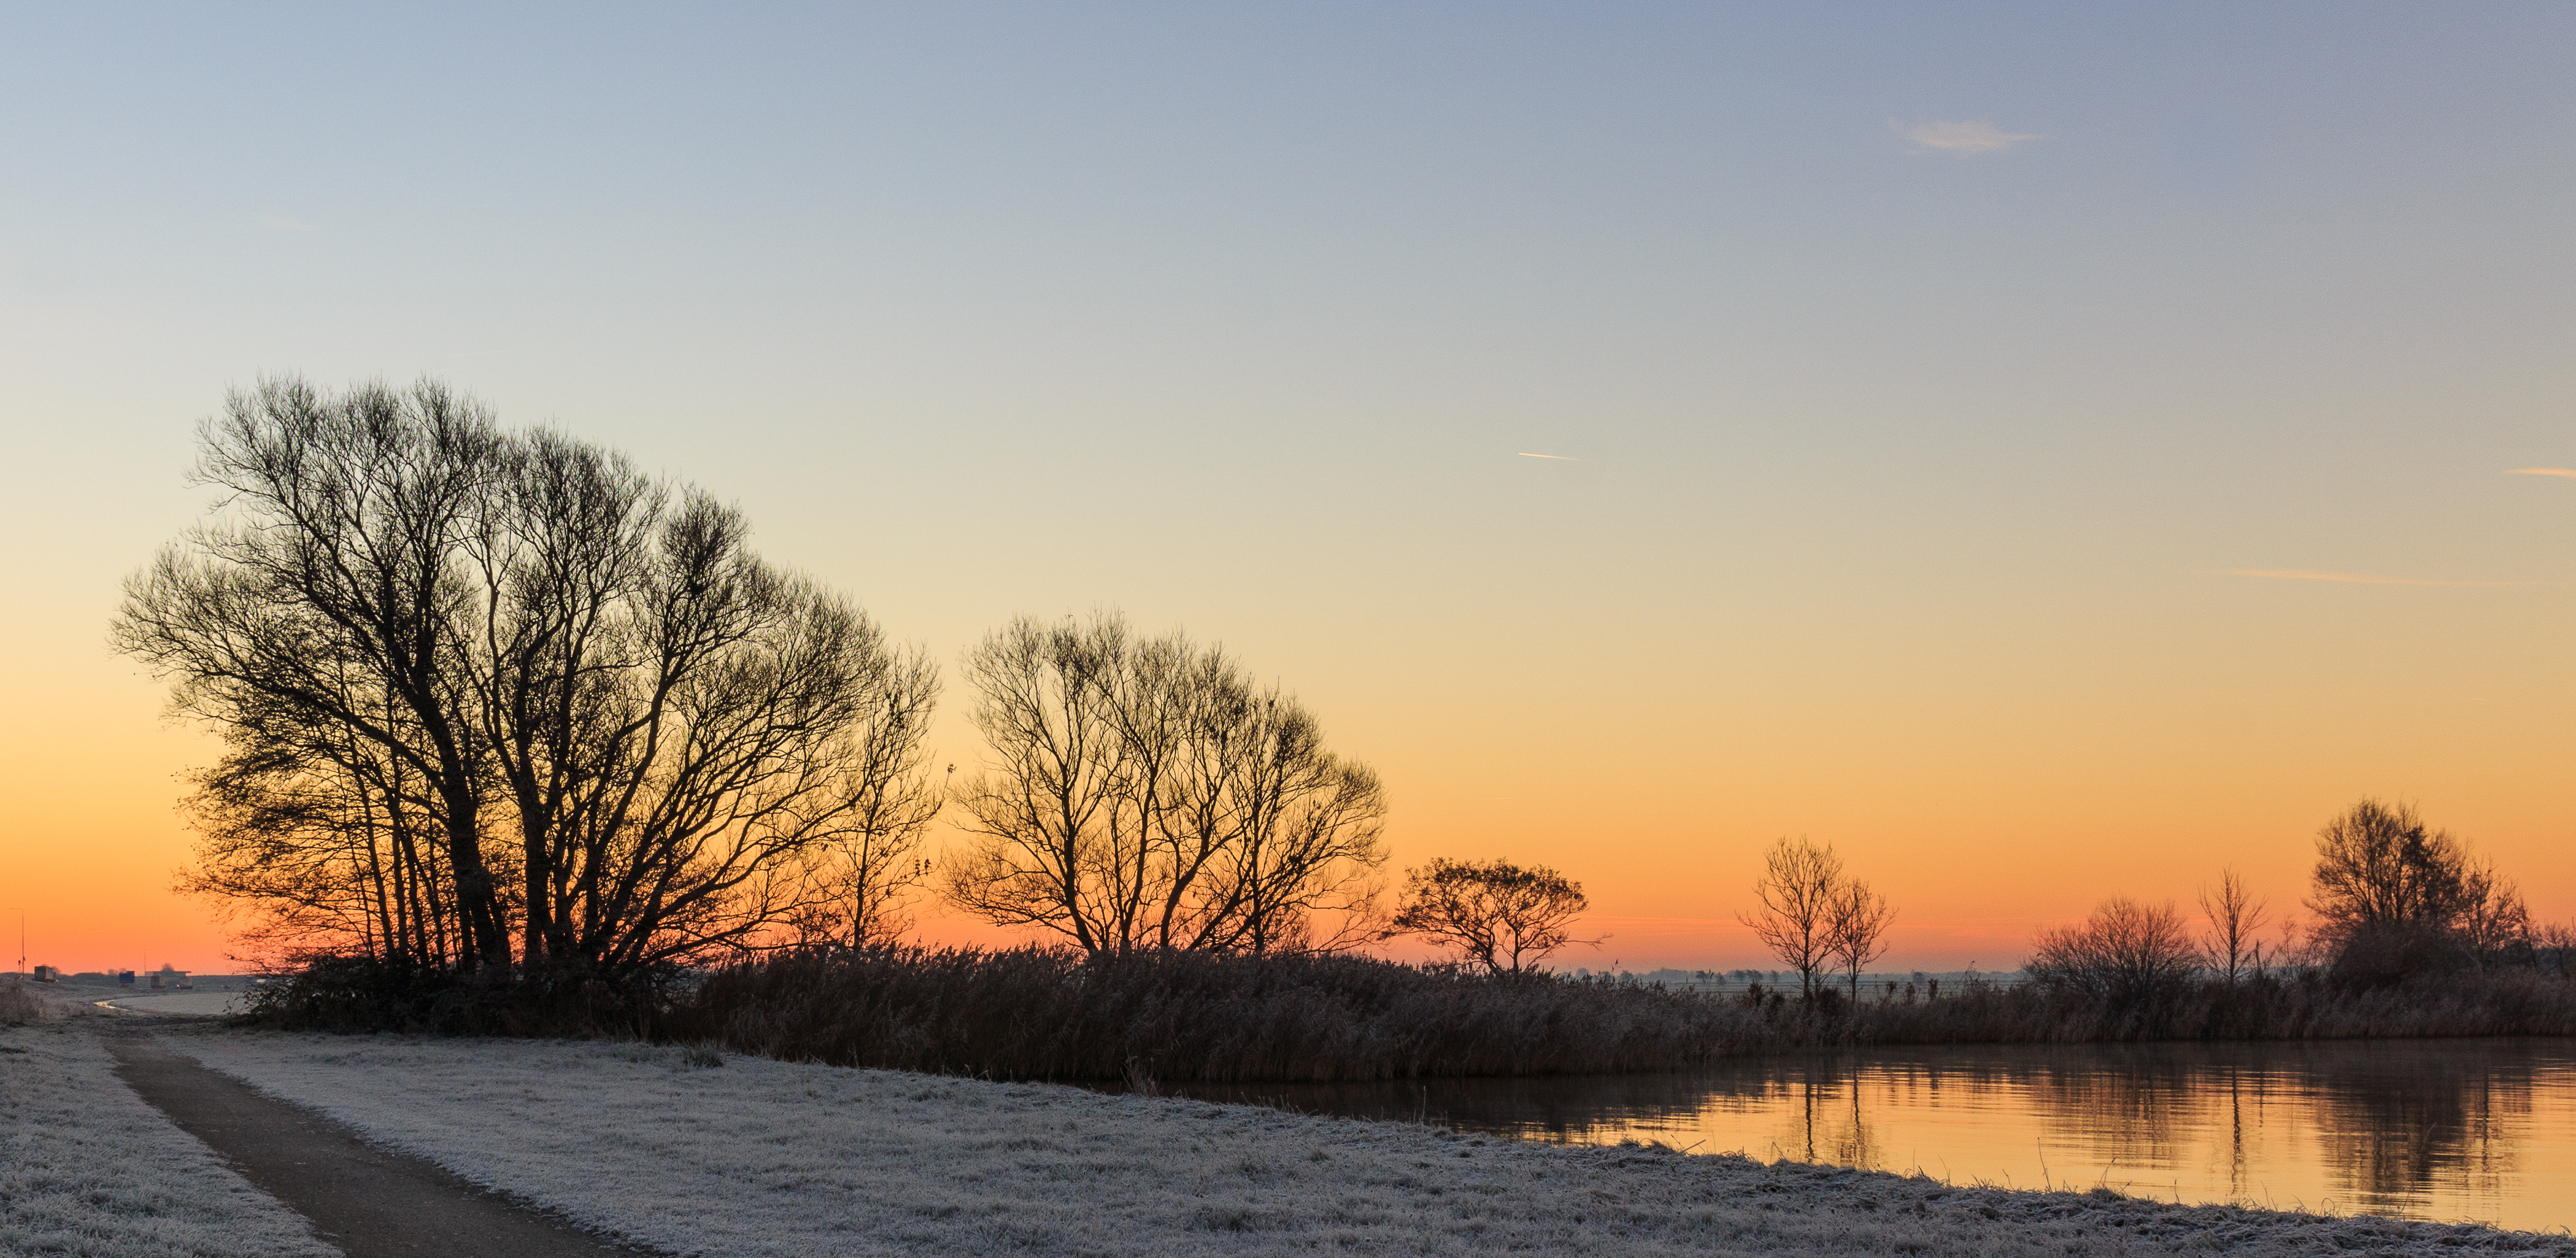 Zon komt op boven een winters landschap. Locatie, Langweerderwielen (Langwarder Wielen) en omgeving 03